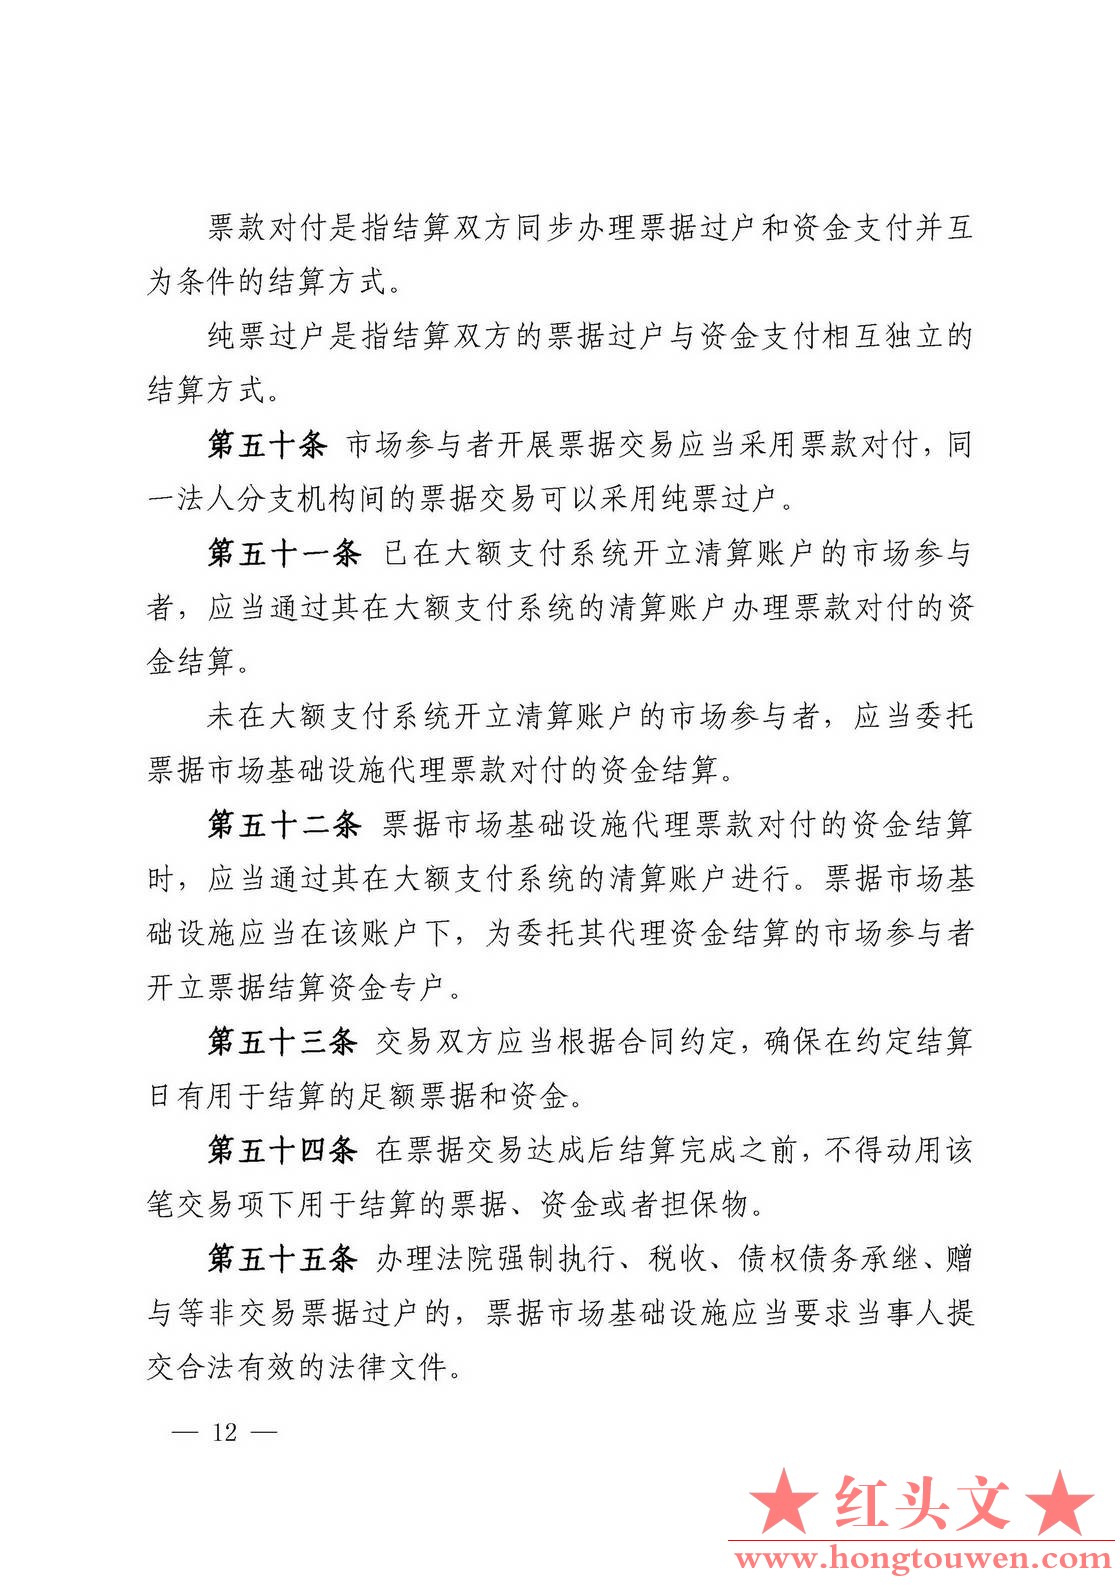 中国人民银行公告[2016]9号-票据交易管理办法_页面_12.jpg